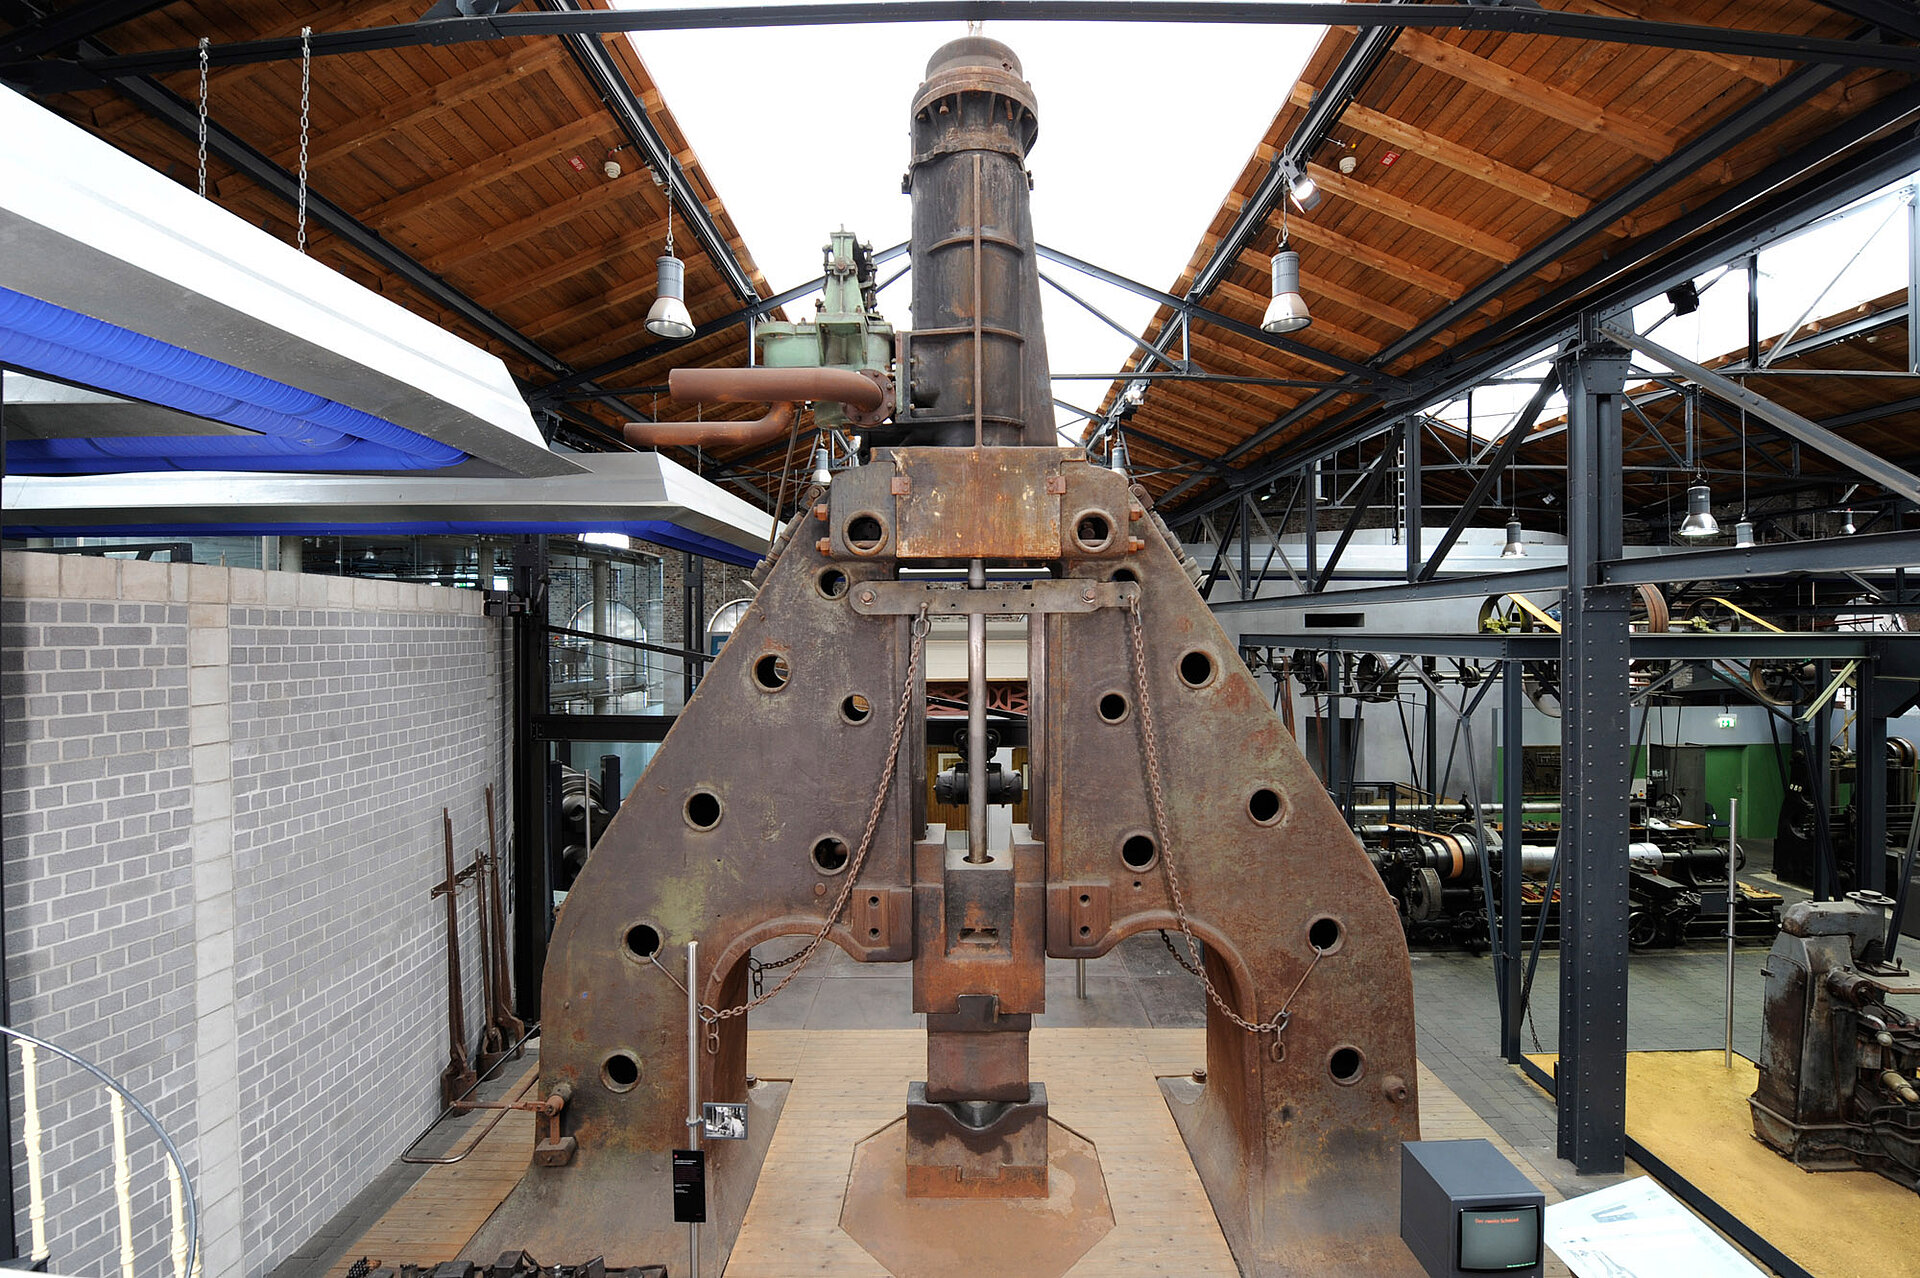 Zehn Meter hoher Dampfhammer in der ehemaligen Dauerausstellung "Schwerindustrie".